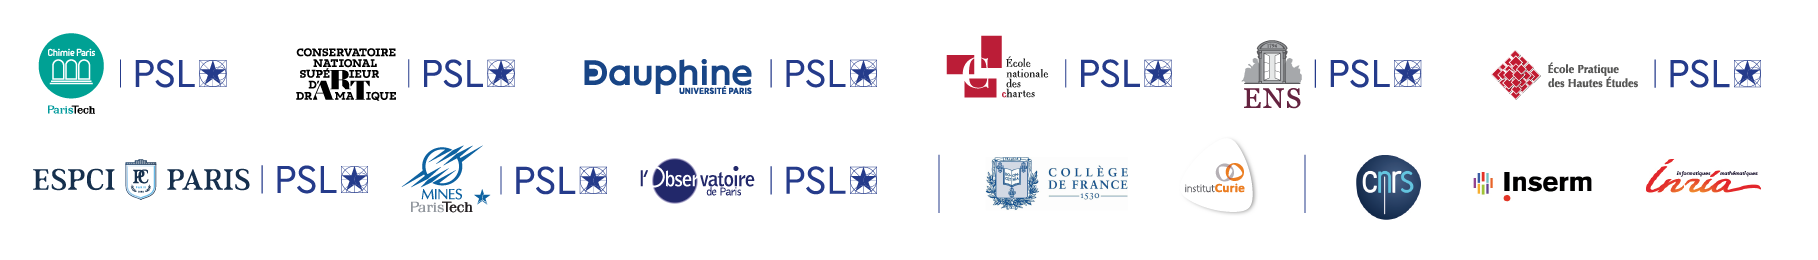 logos université PSL